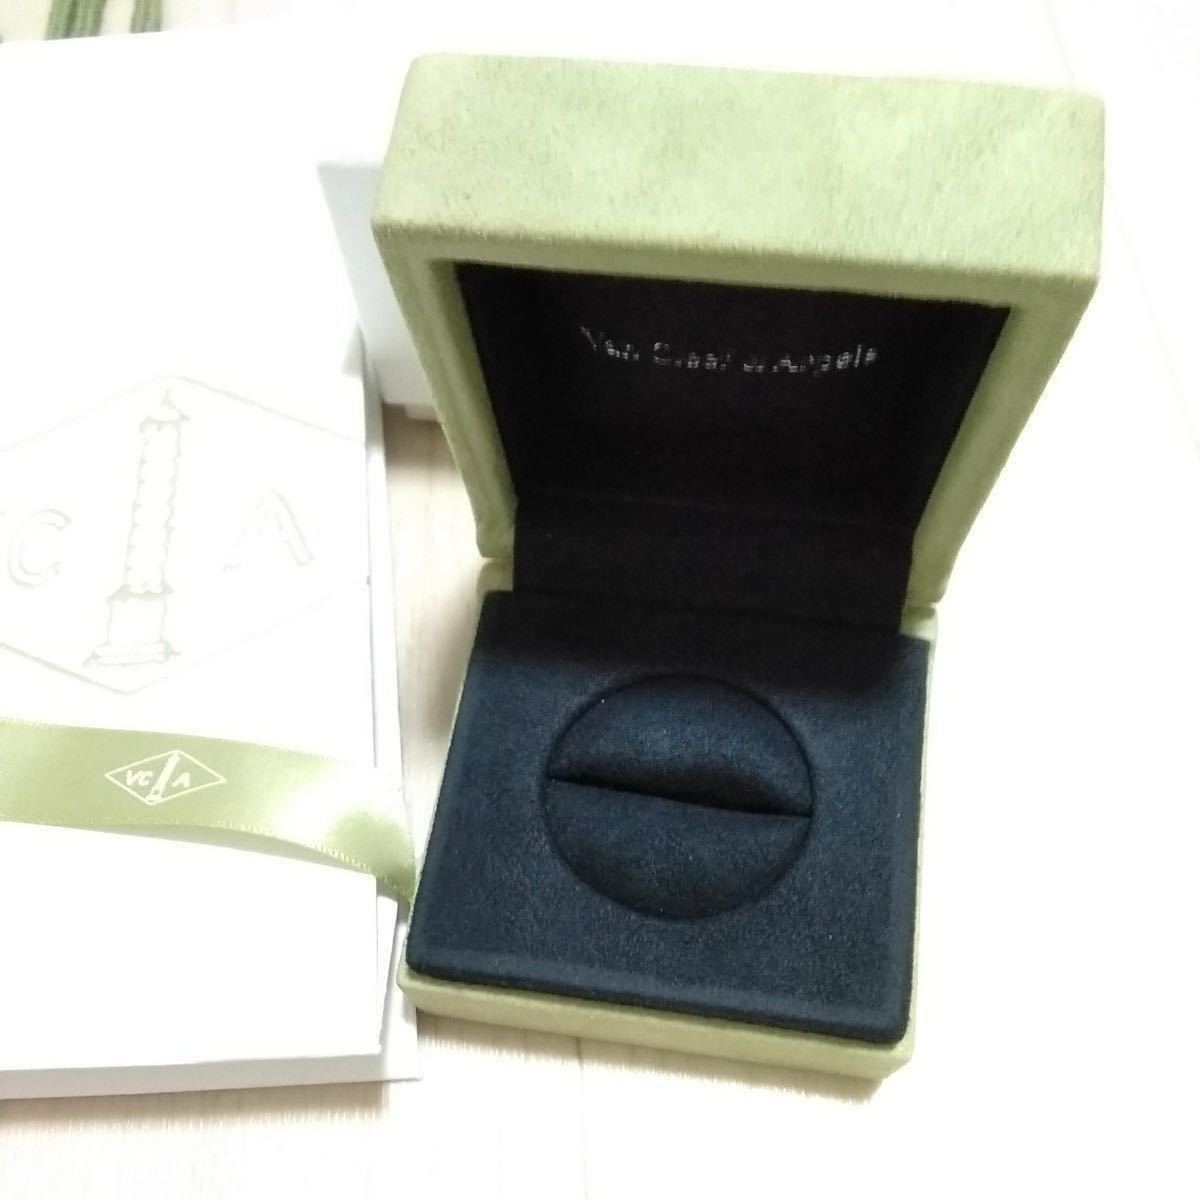 [ пустой коробка ] Van Cleef & Arpels Van Cleef&Arpels кольцо кейс кольцо кейс коробка лента бумажный пакет 